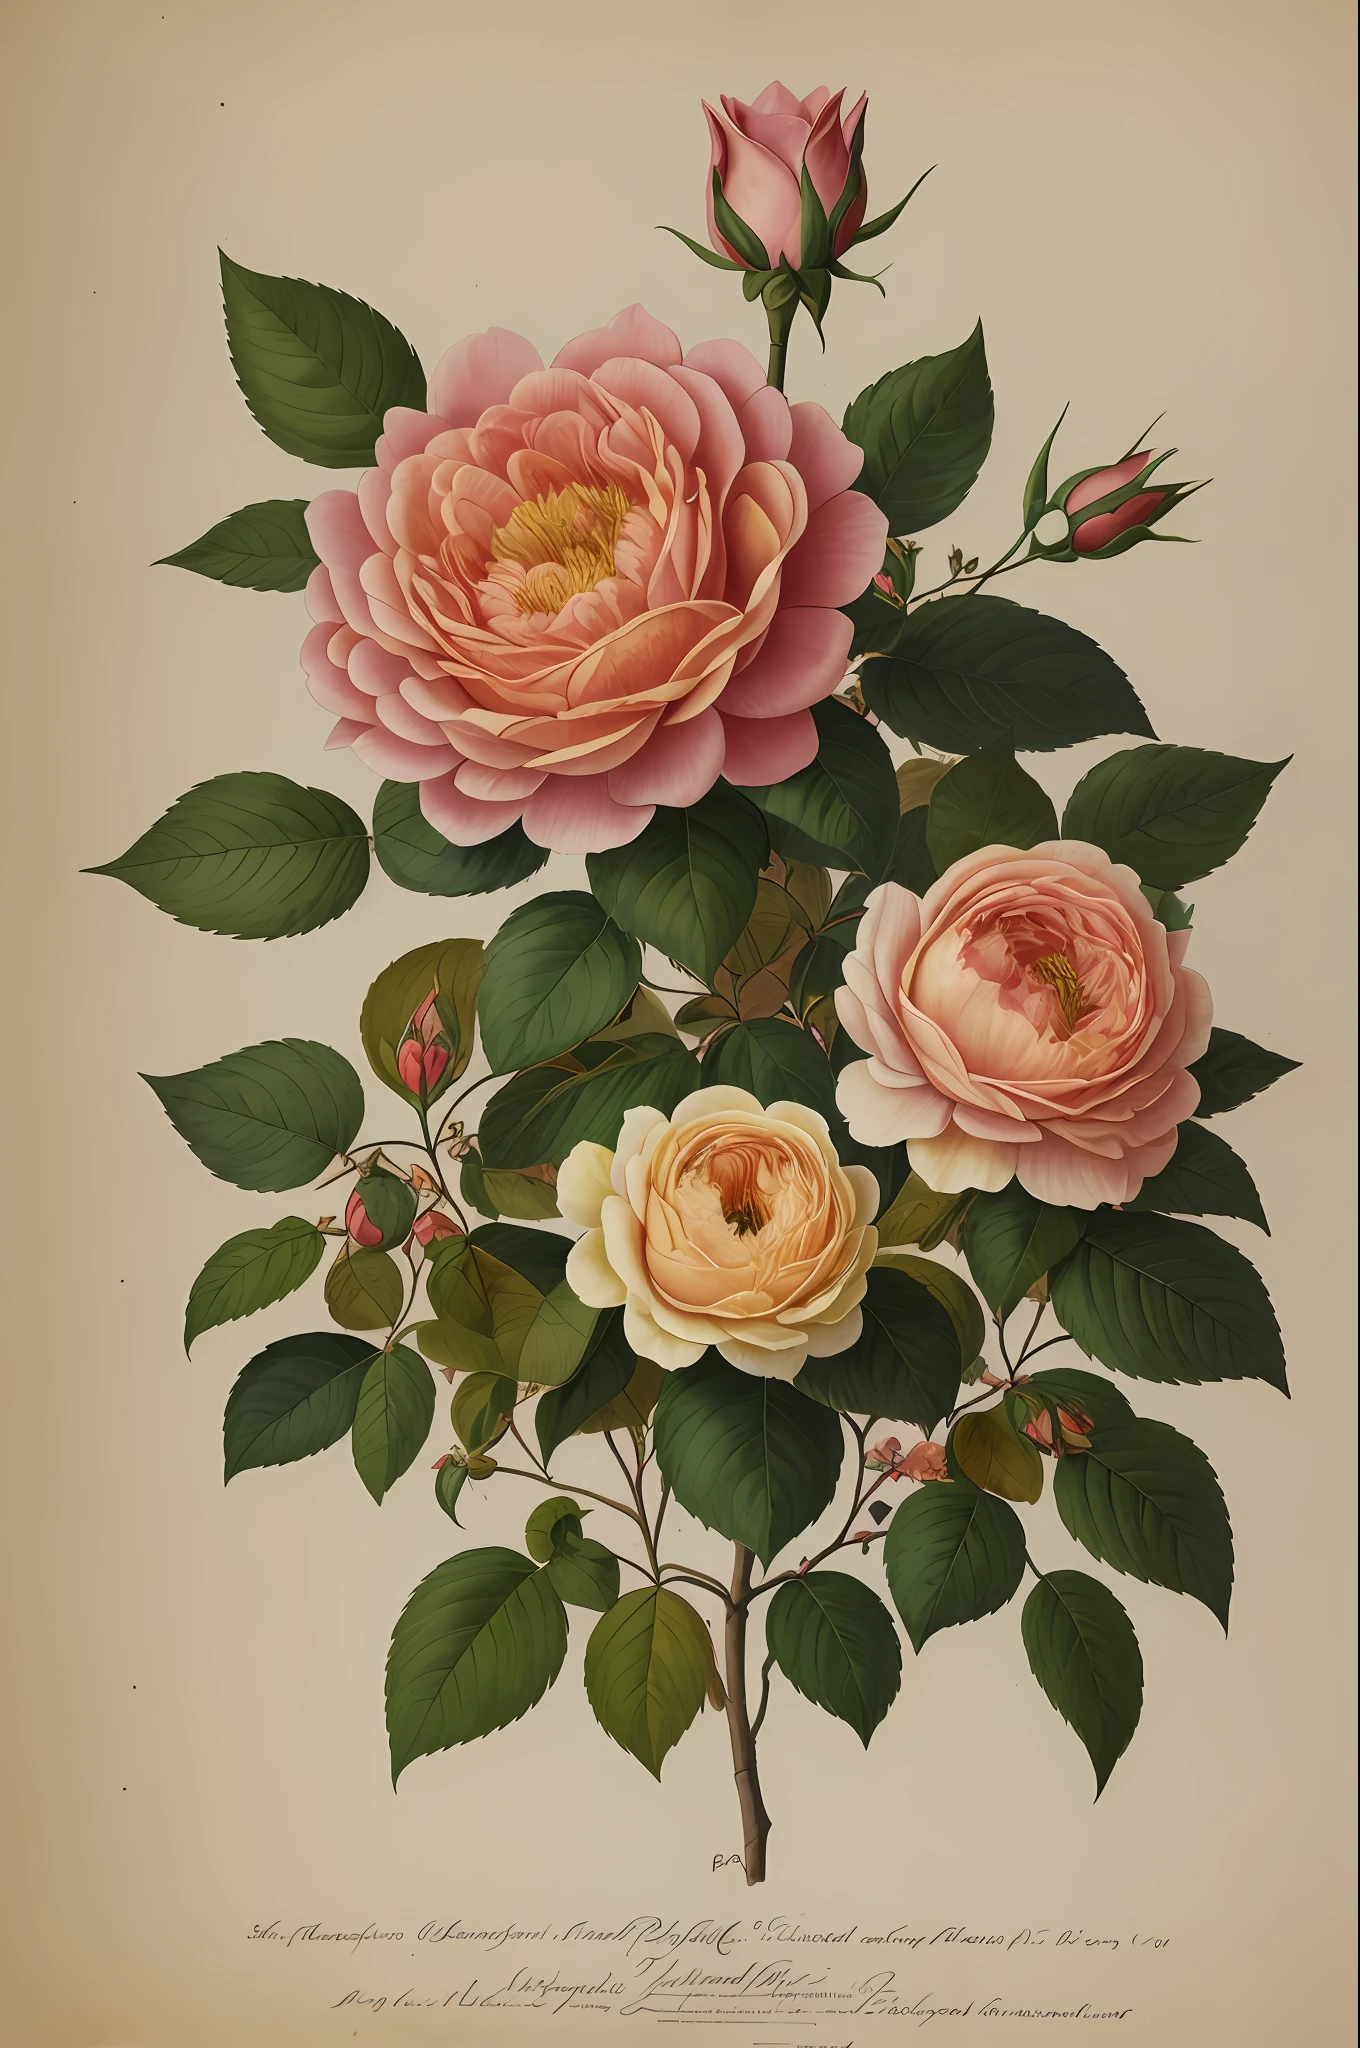 (beste Qualität:1.2), (ausführlich:1.2), (Meisterwerk:1.2), Vintage botanische Illustrationen der größeren Provence Rose (1770 1775) in hoher Auflösung von John Edwards